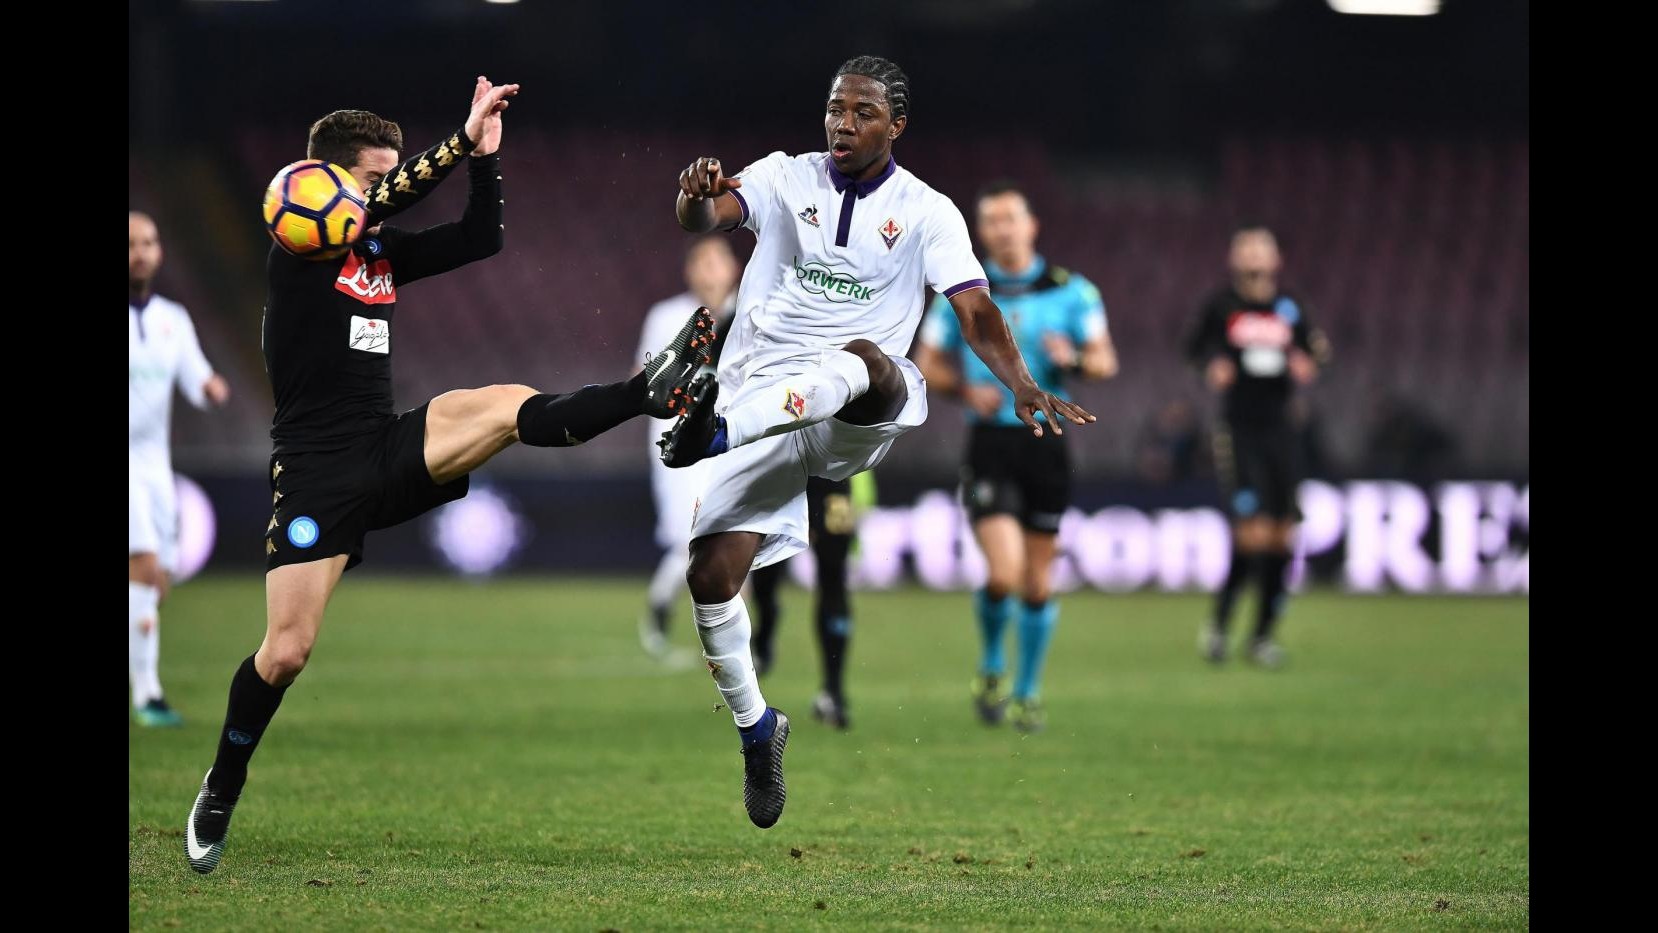 Coppa Italia, Napoli va in semifinale: 1-0 alla Fiorentina